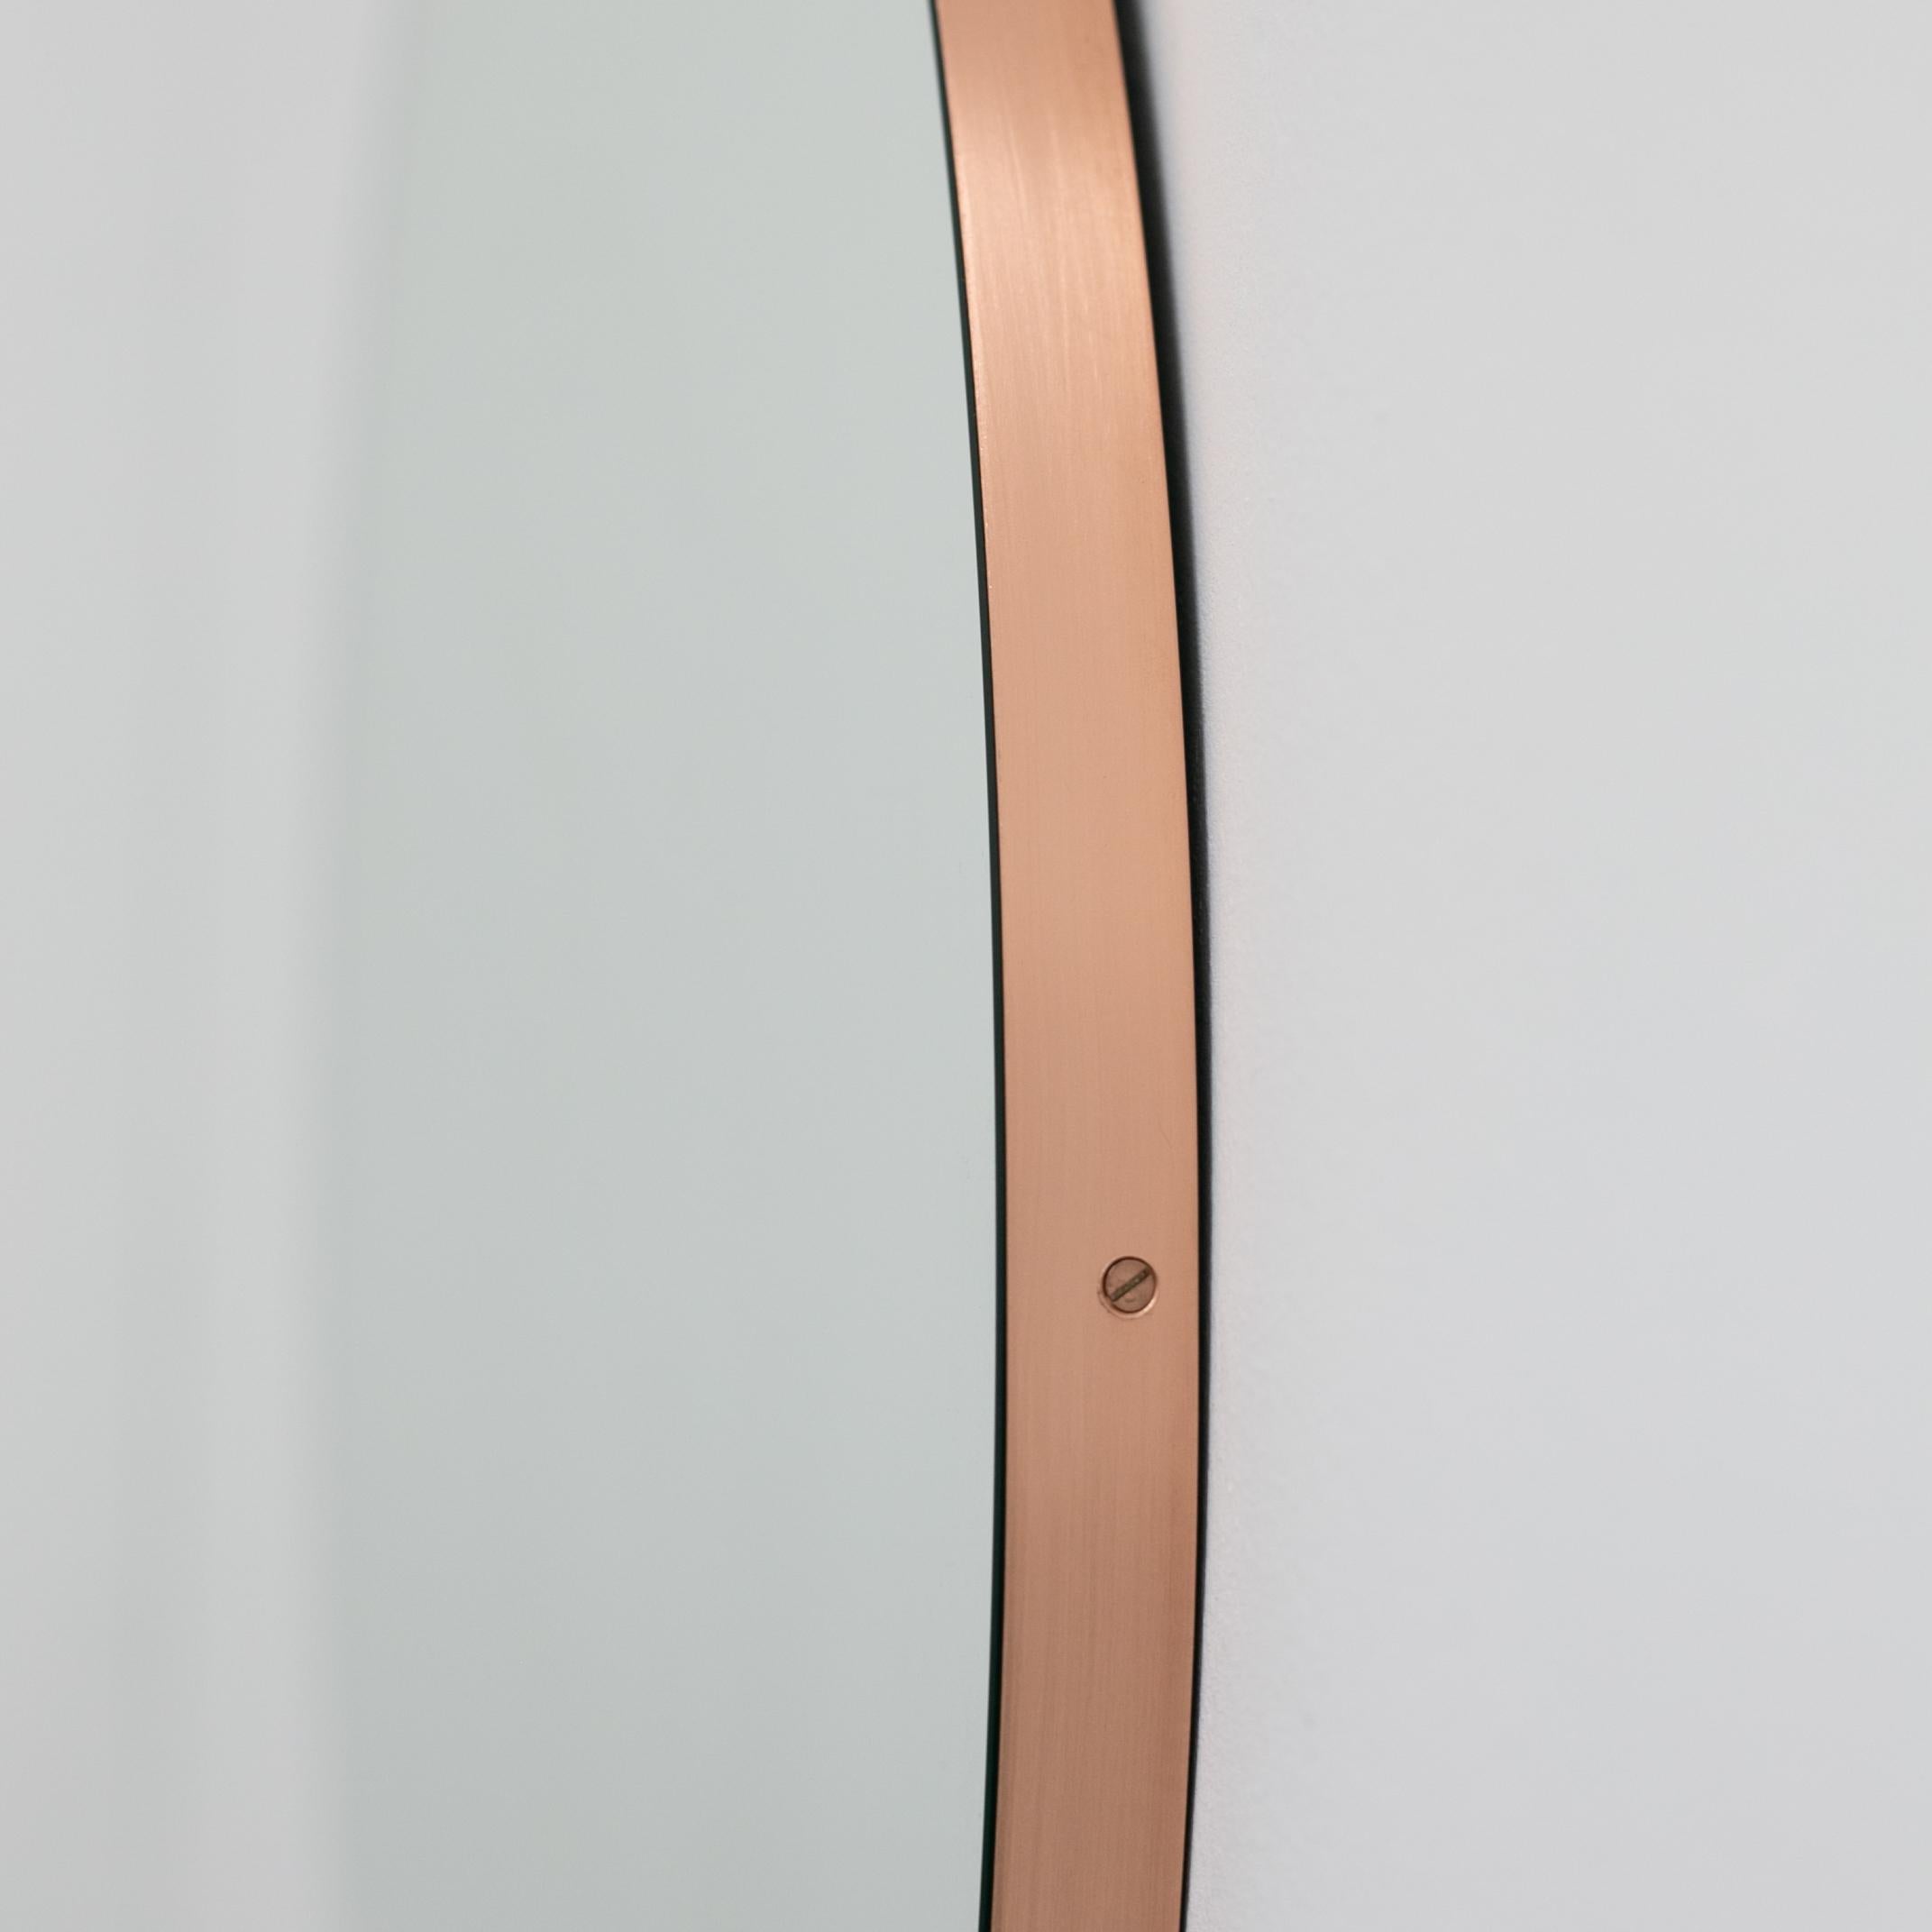 Miroir rond minimaliste avec un élégant cadre fin en cuivre brossé. Les détails et la finition, y compris les vis visibles plaquées cuivre, soulignent l'aspect artisanal et la qualité du miroir, véritable signature de notre marque. Conçu et fabriqué